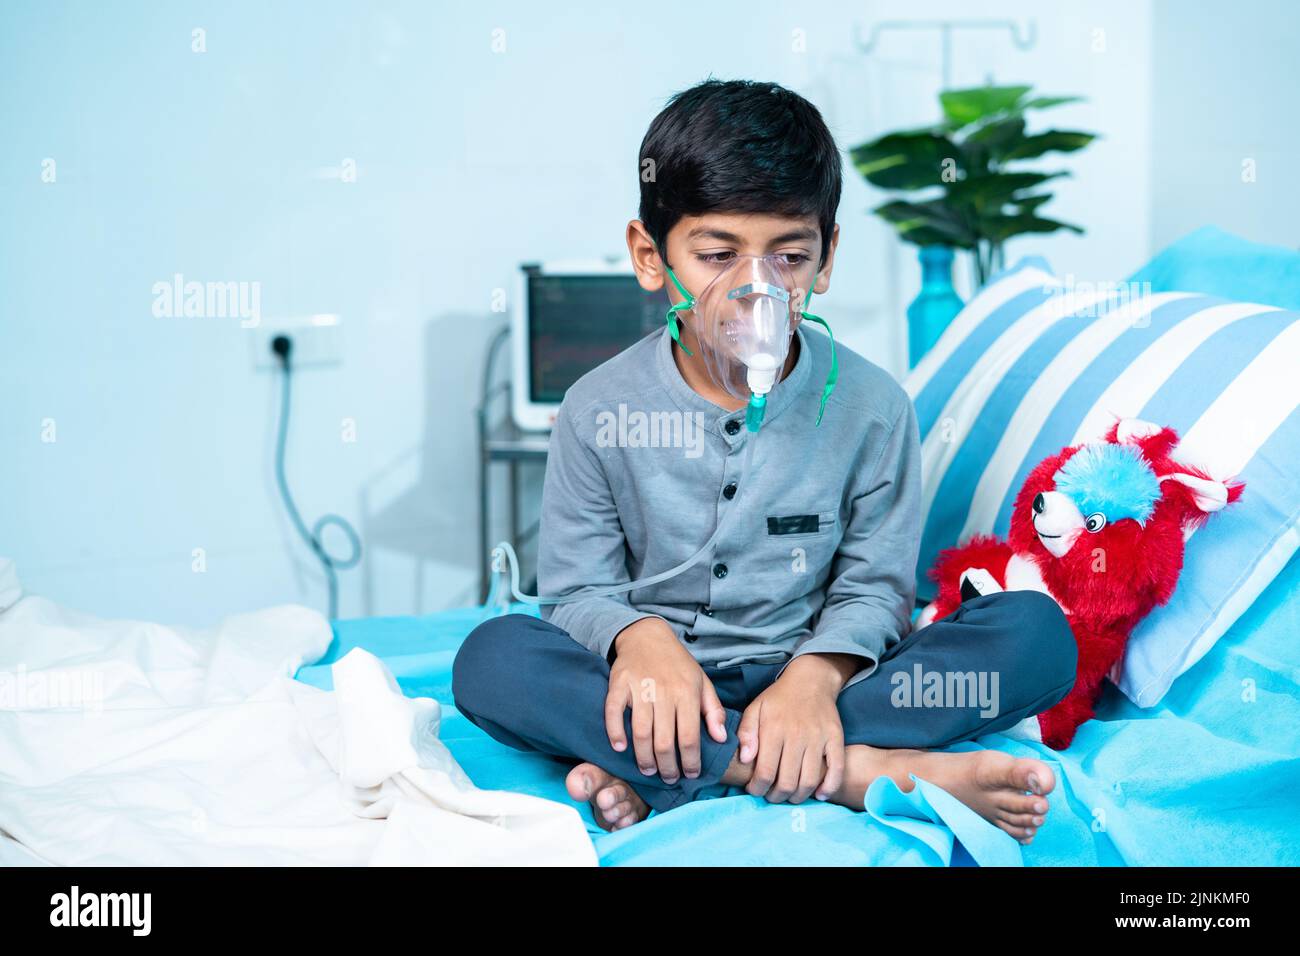 Besorgte kranke Kind mit Sauerstoffmaske auf dem Bett auf der Krankenhausstation sitzen - Konzept der Atemprobleme, Atemwegsinfektion und Gesundheitsversorgung Behandlung. Stockfoto